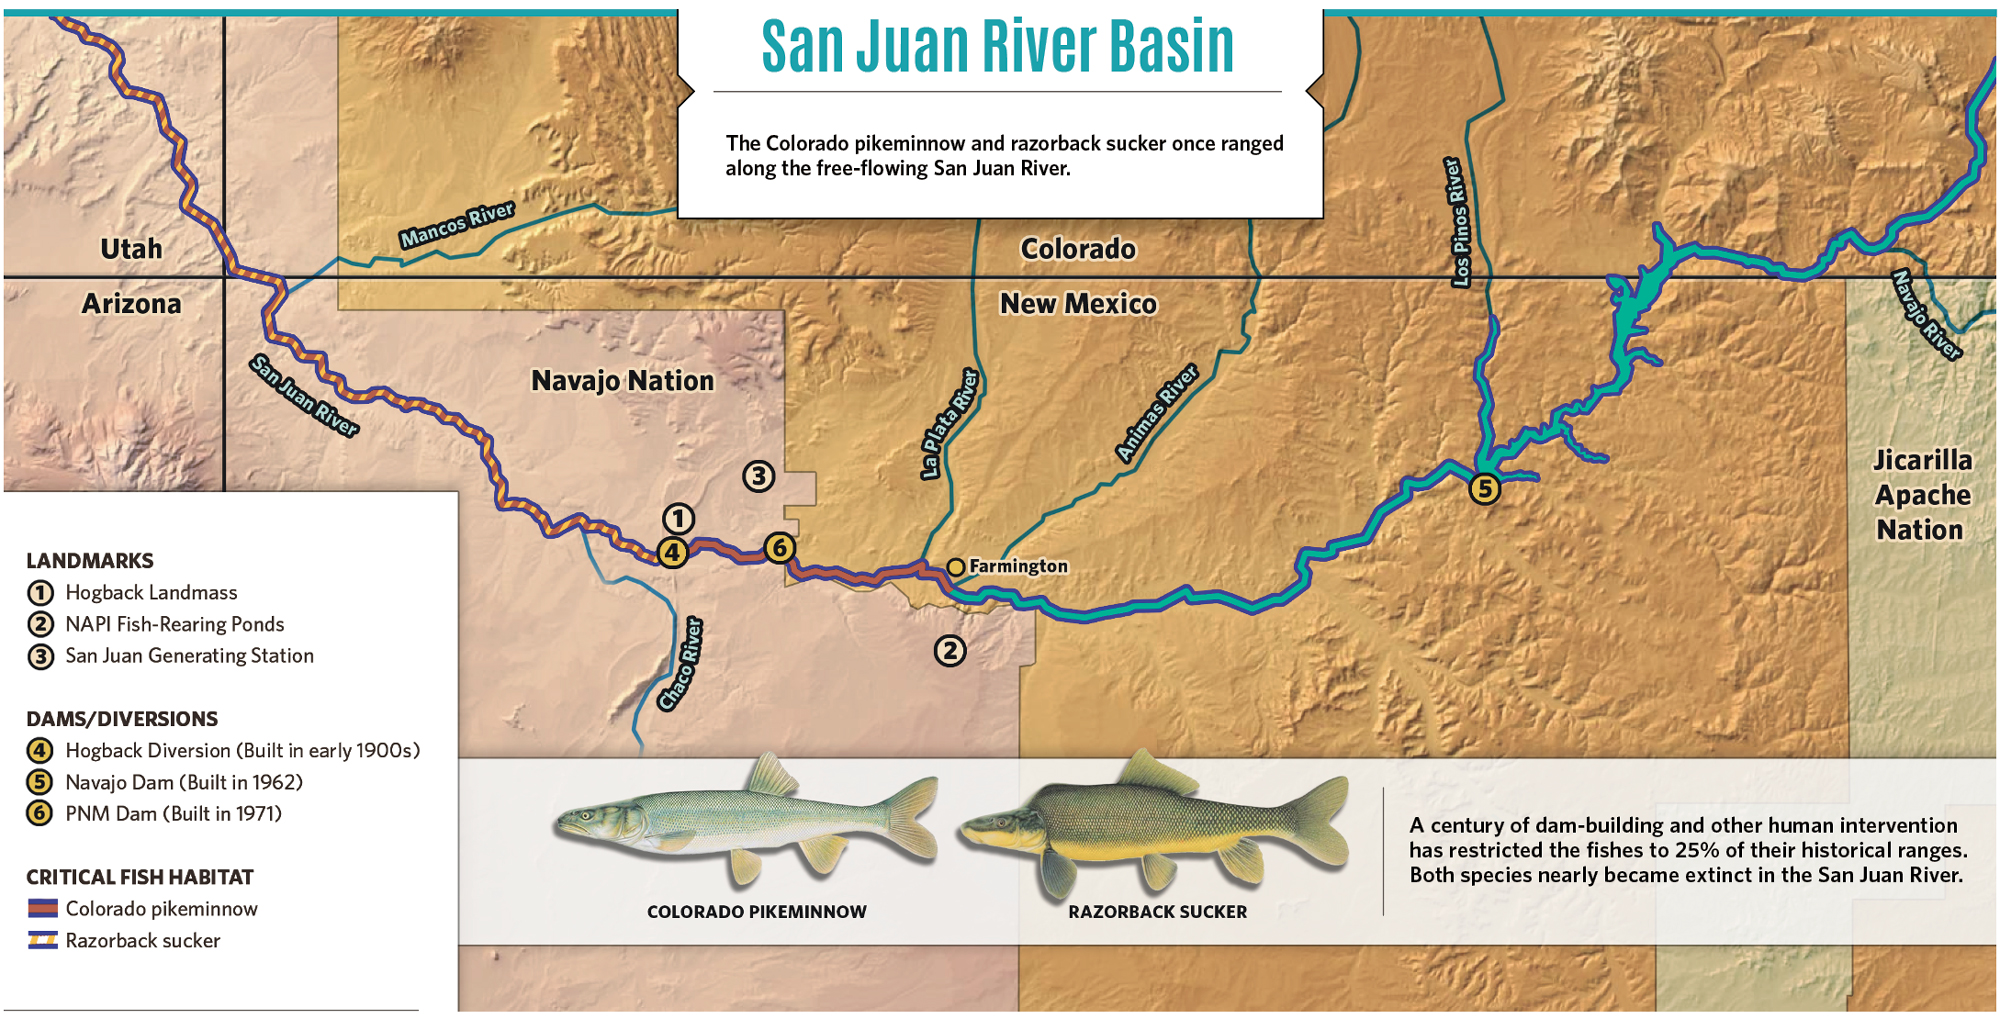 Replenishing the San Juan River